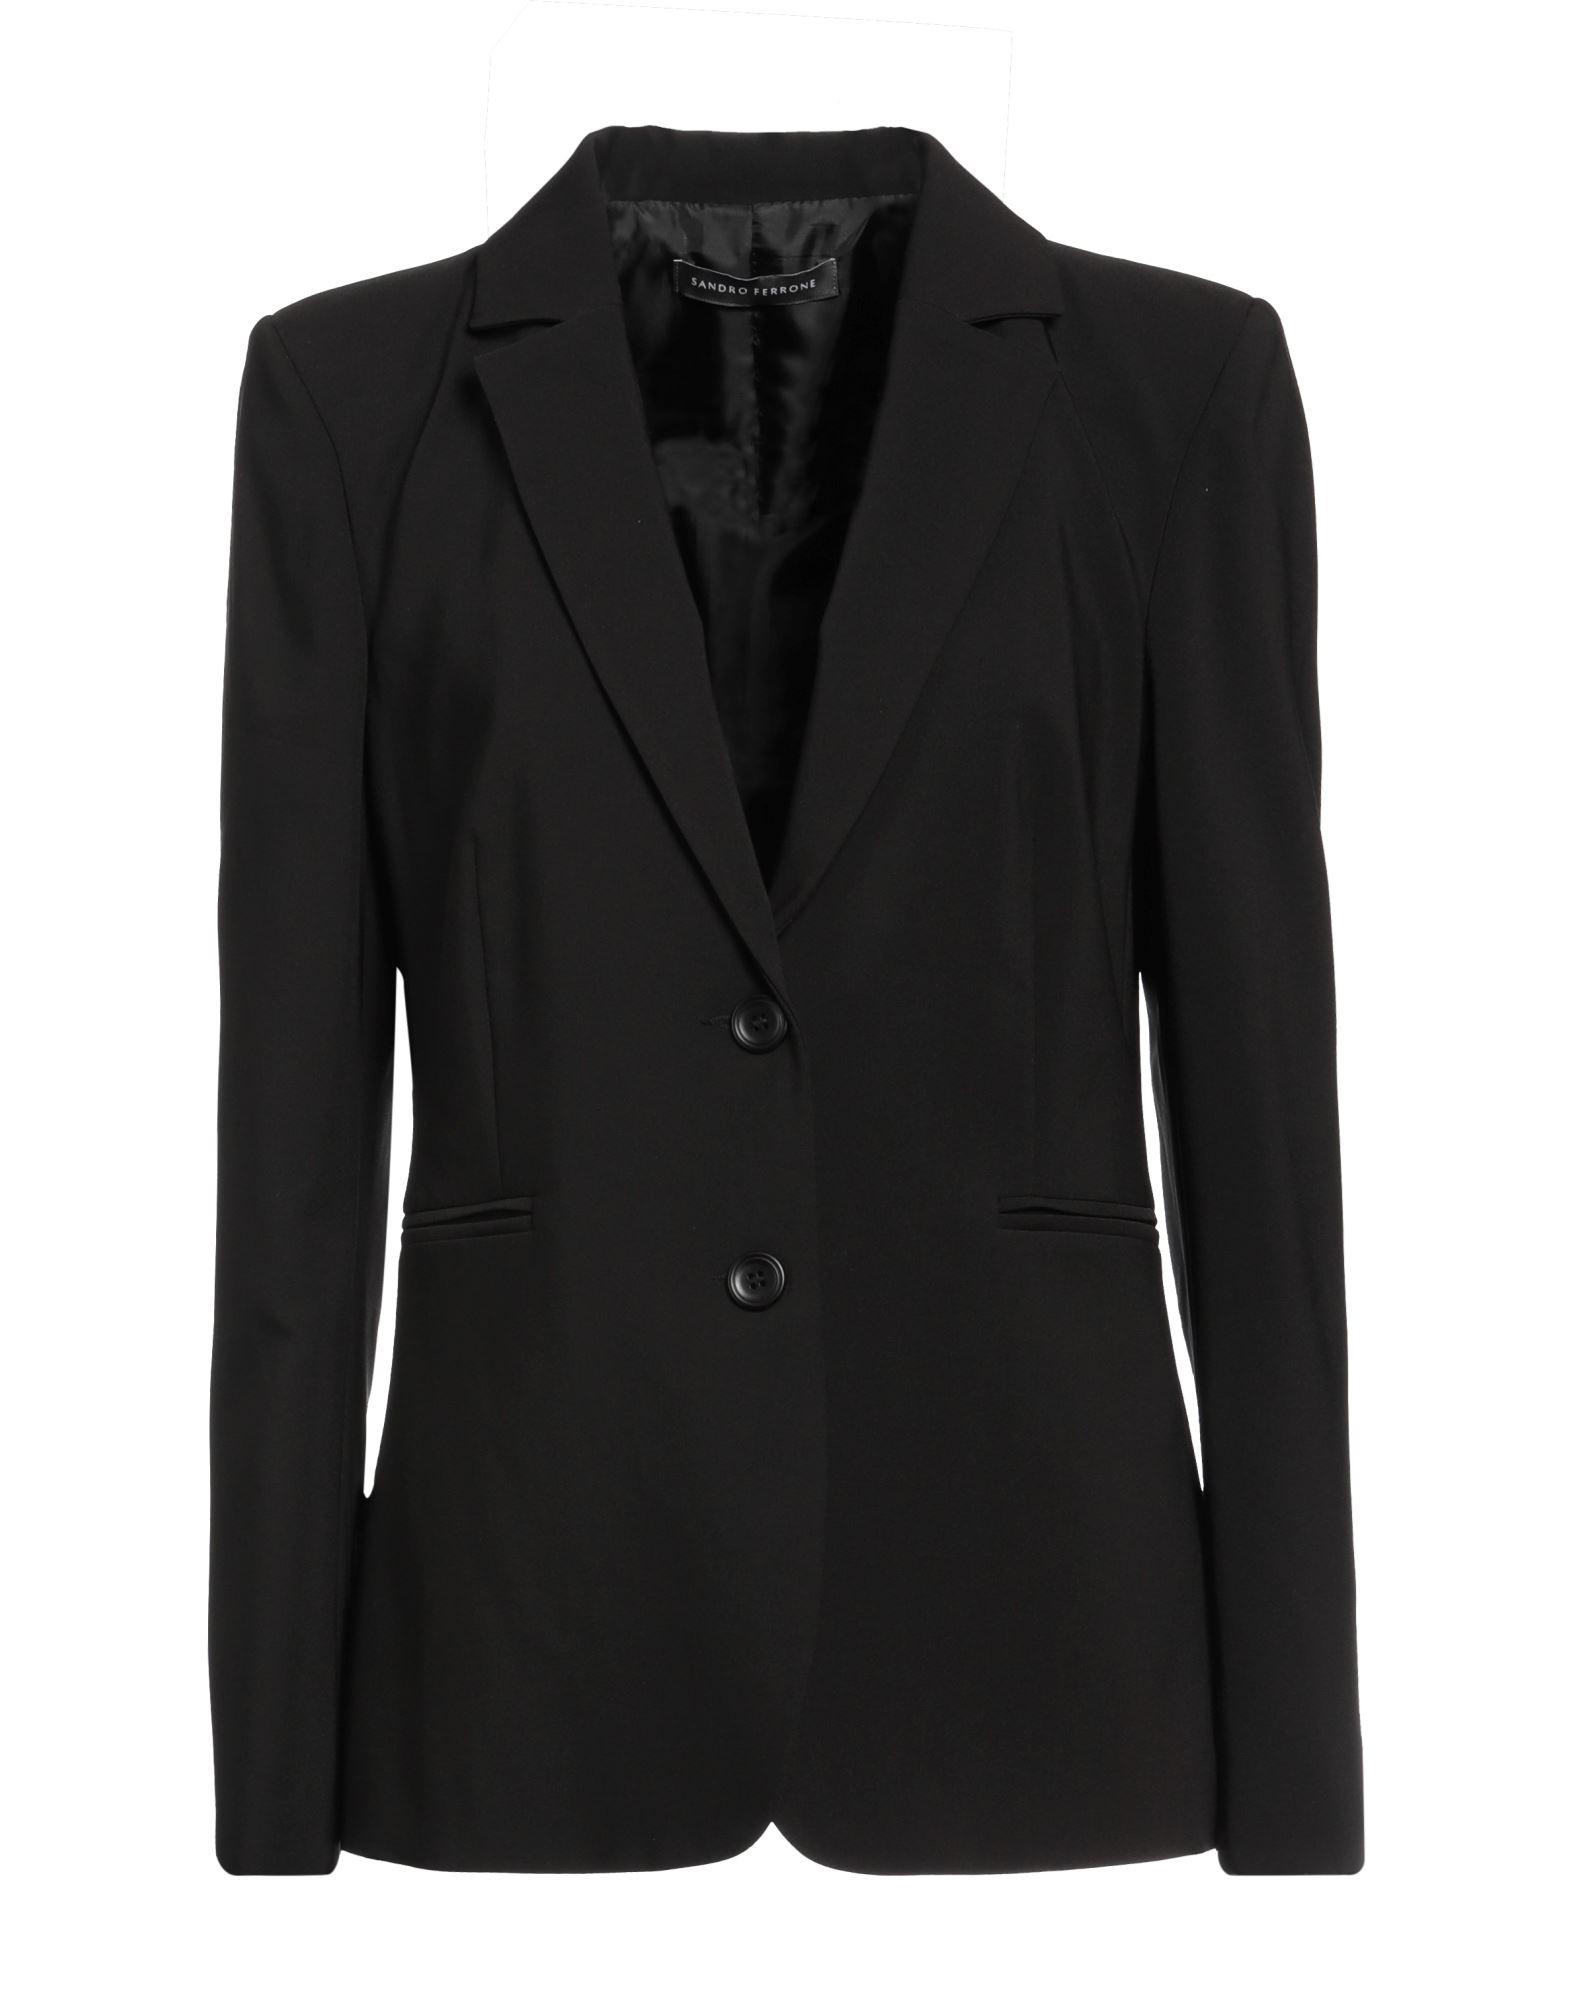 Sandro Ferrone Suit Jacket in Black | Lyst